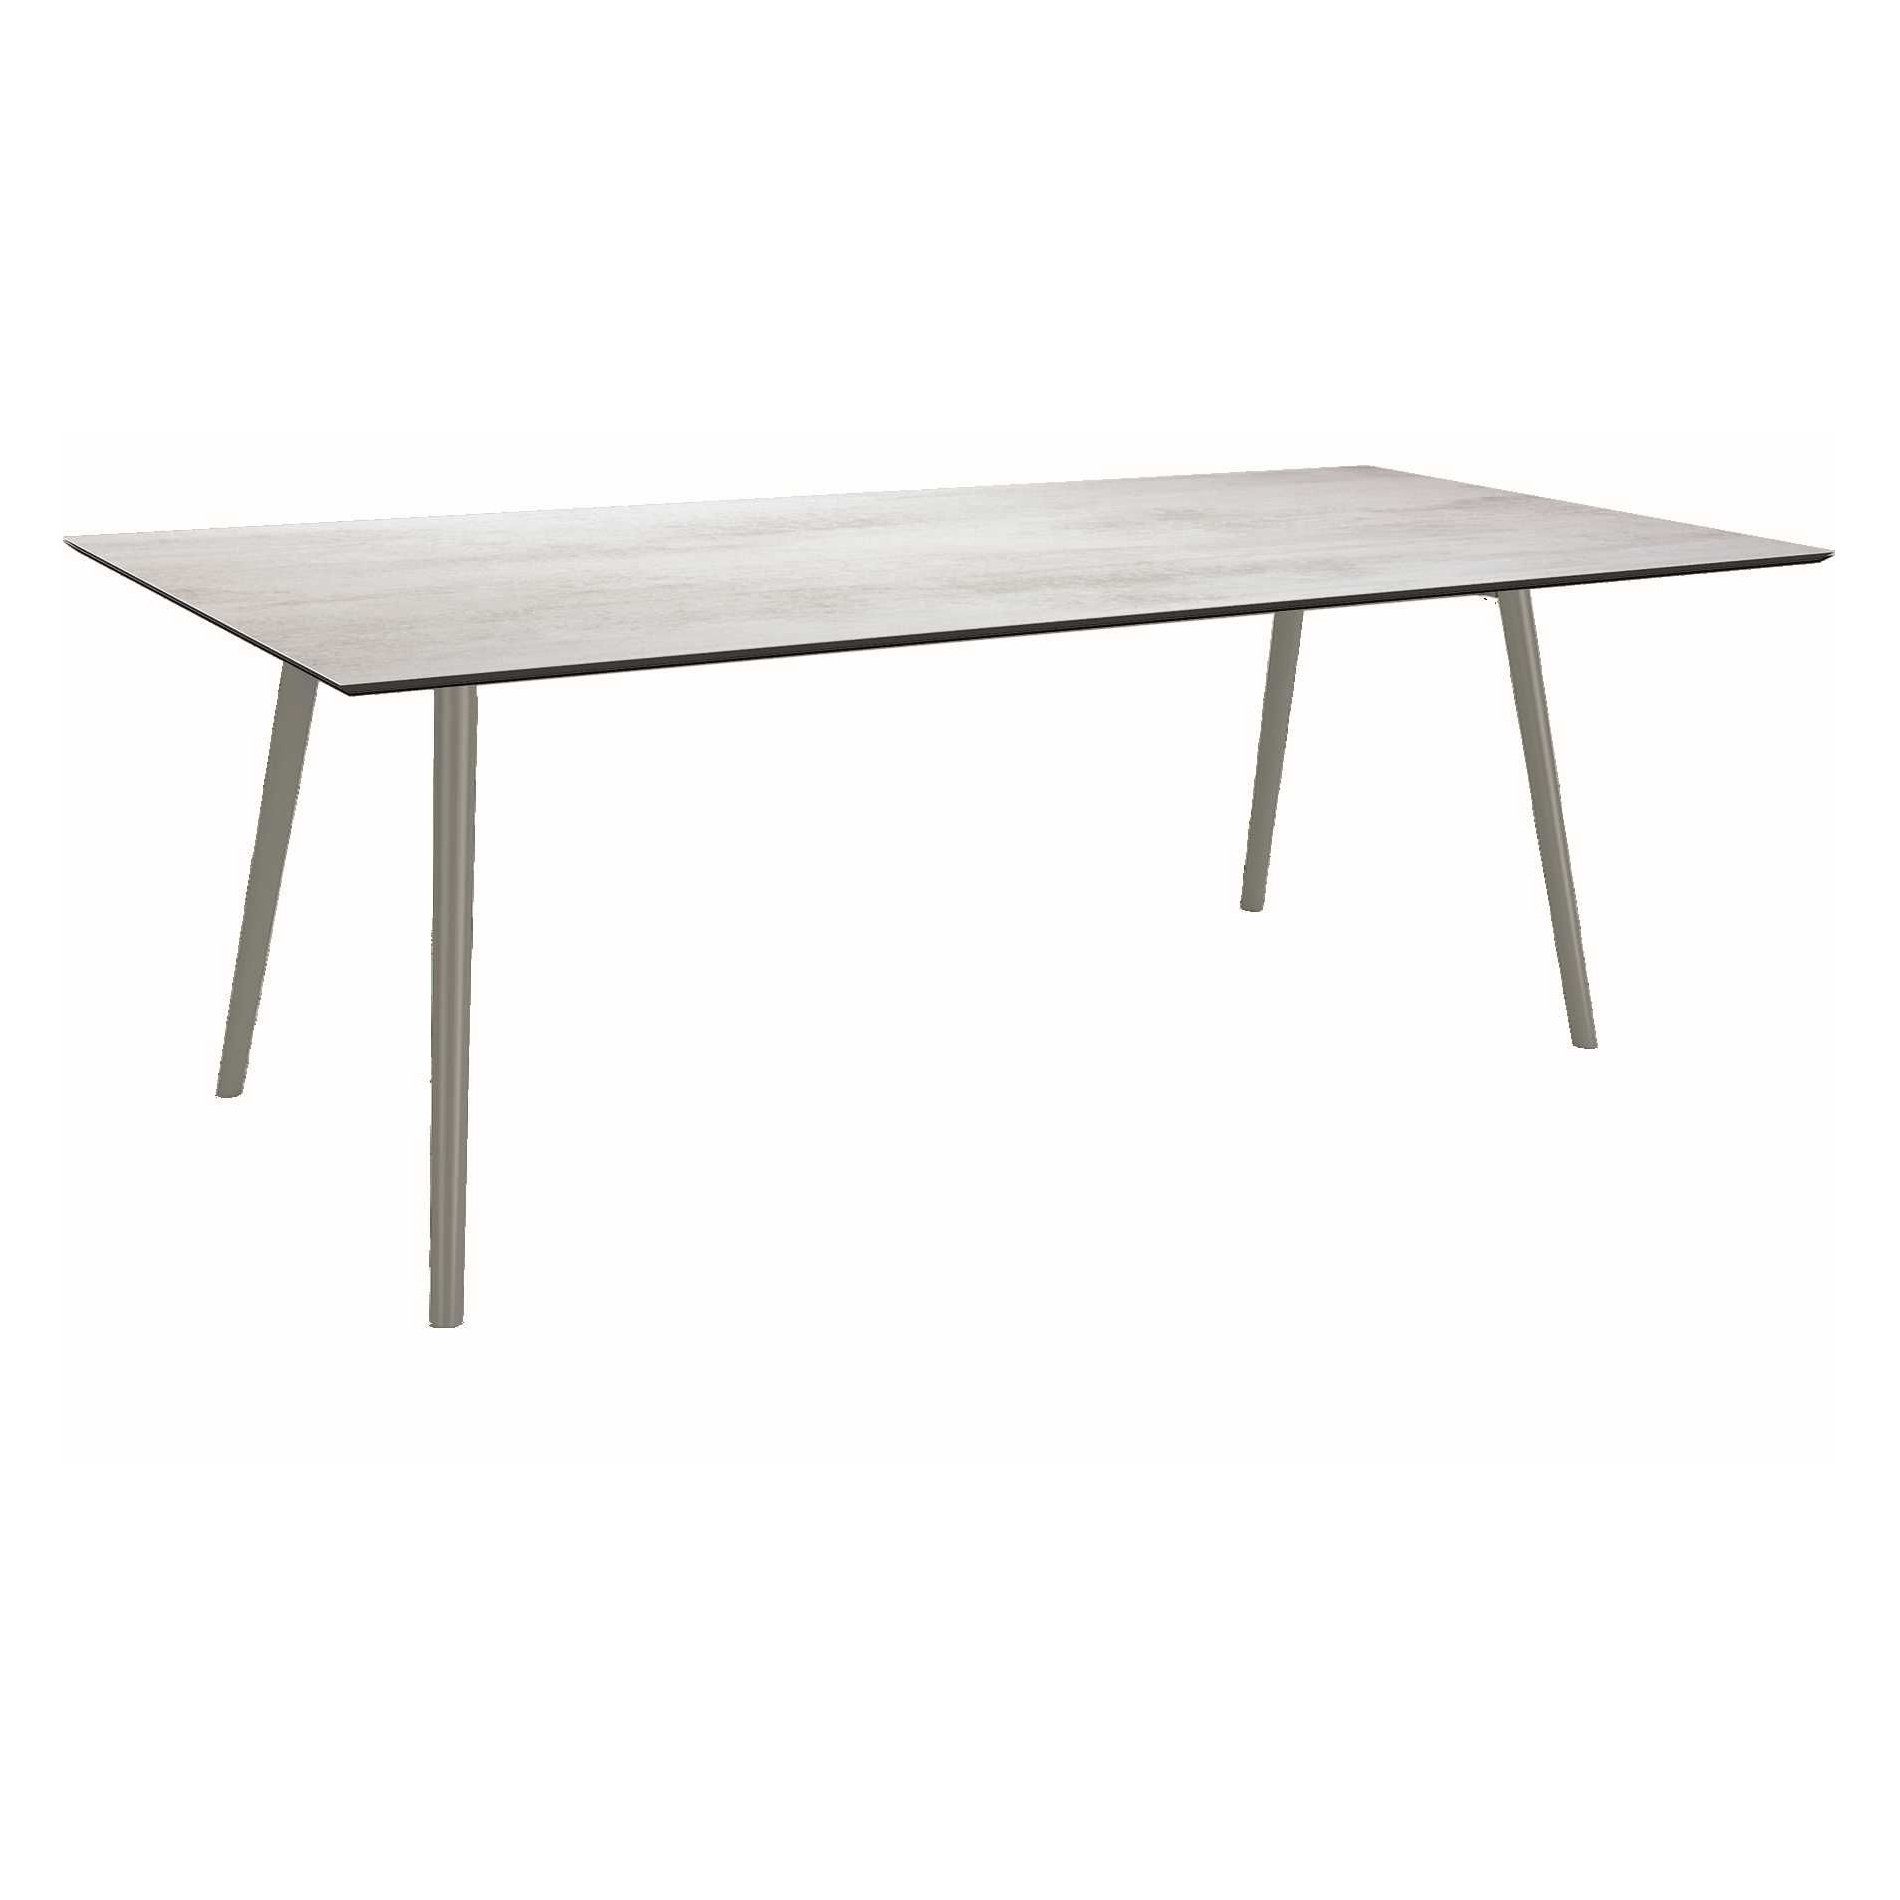 Stern Tisch "Interno", Größe 220x100cm, Alu graphit, Rundrohr, Tischplatte HPL Zement hell